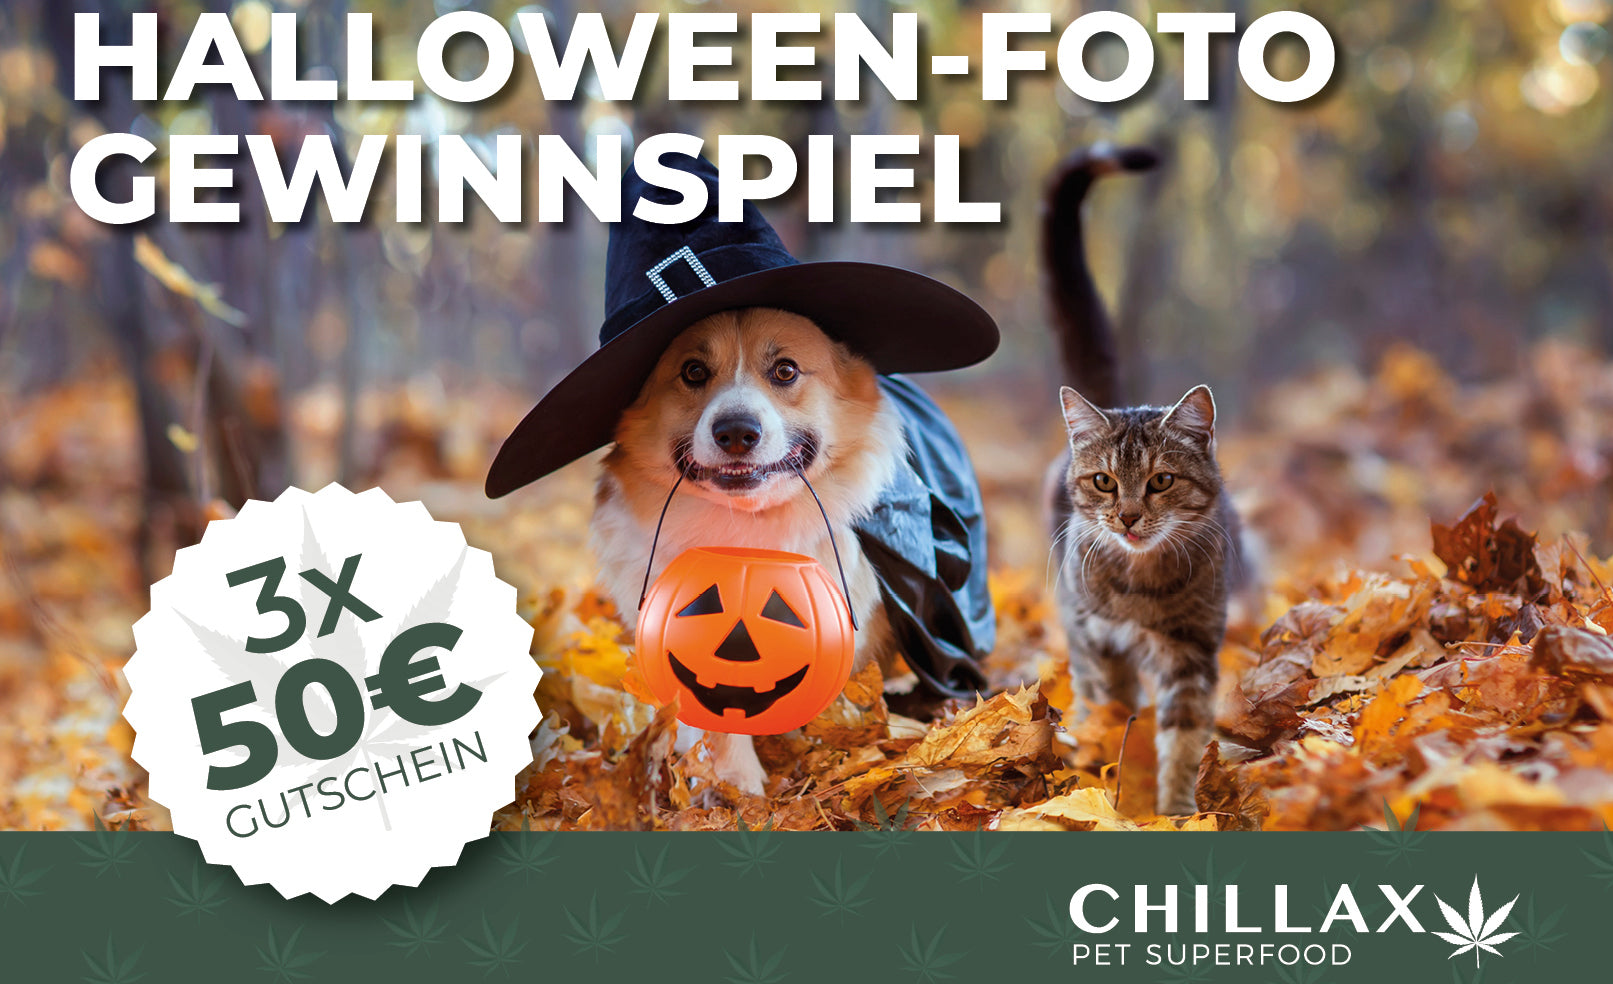 Halloween Foto Gewinnspiel: Gewinne 3x einen 50 Euro-Gutschein für den Chillax-Shop